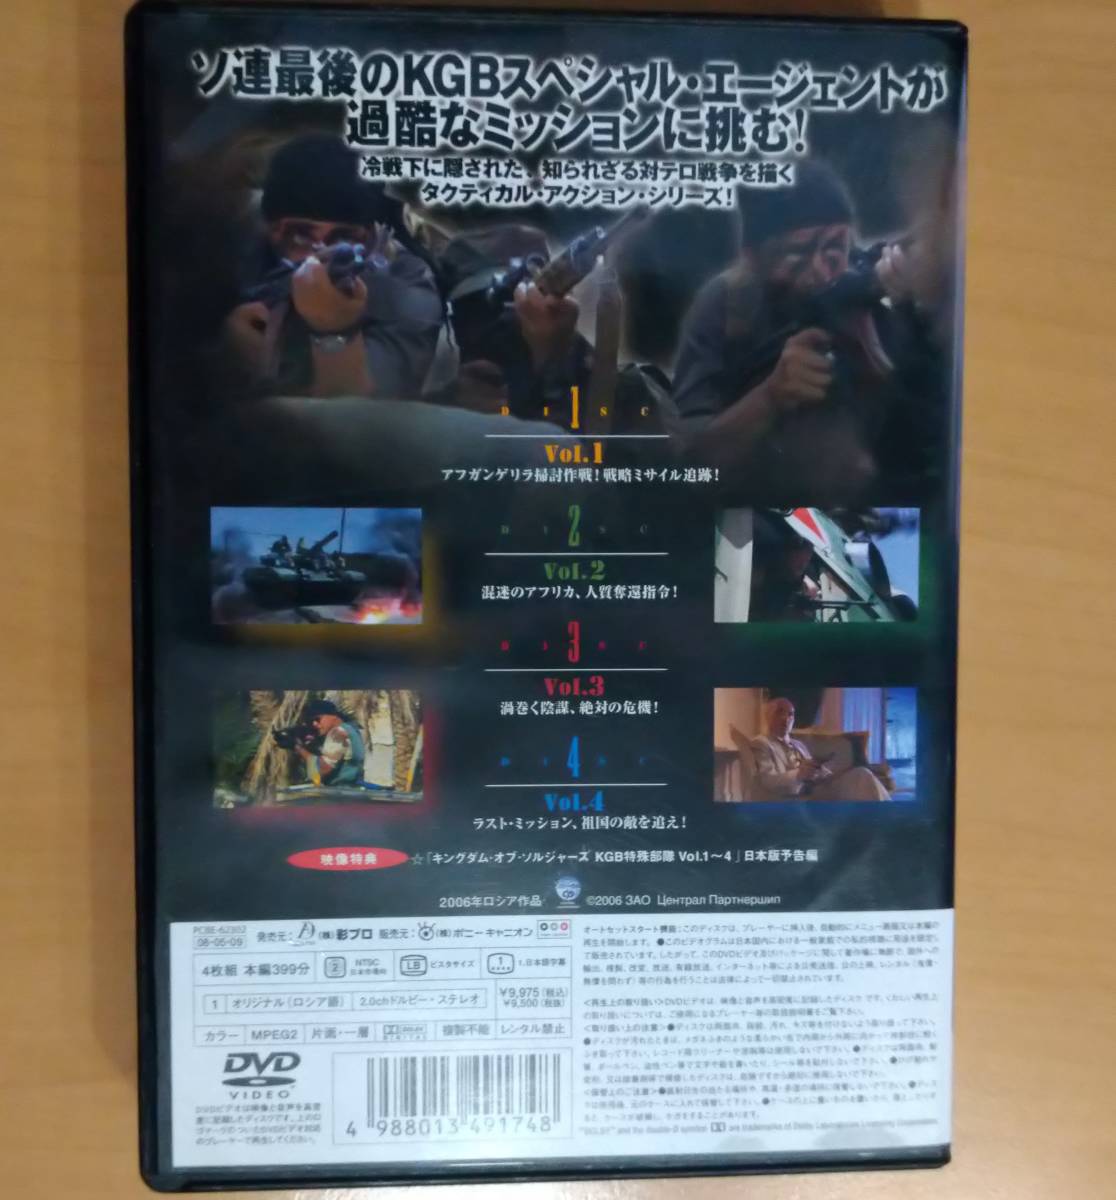 【中古】キングダム・オブ・ソルジャーズ KGB特殊部隊 コンプリートBOX DVD4枚組 日本語字幕